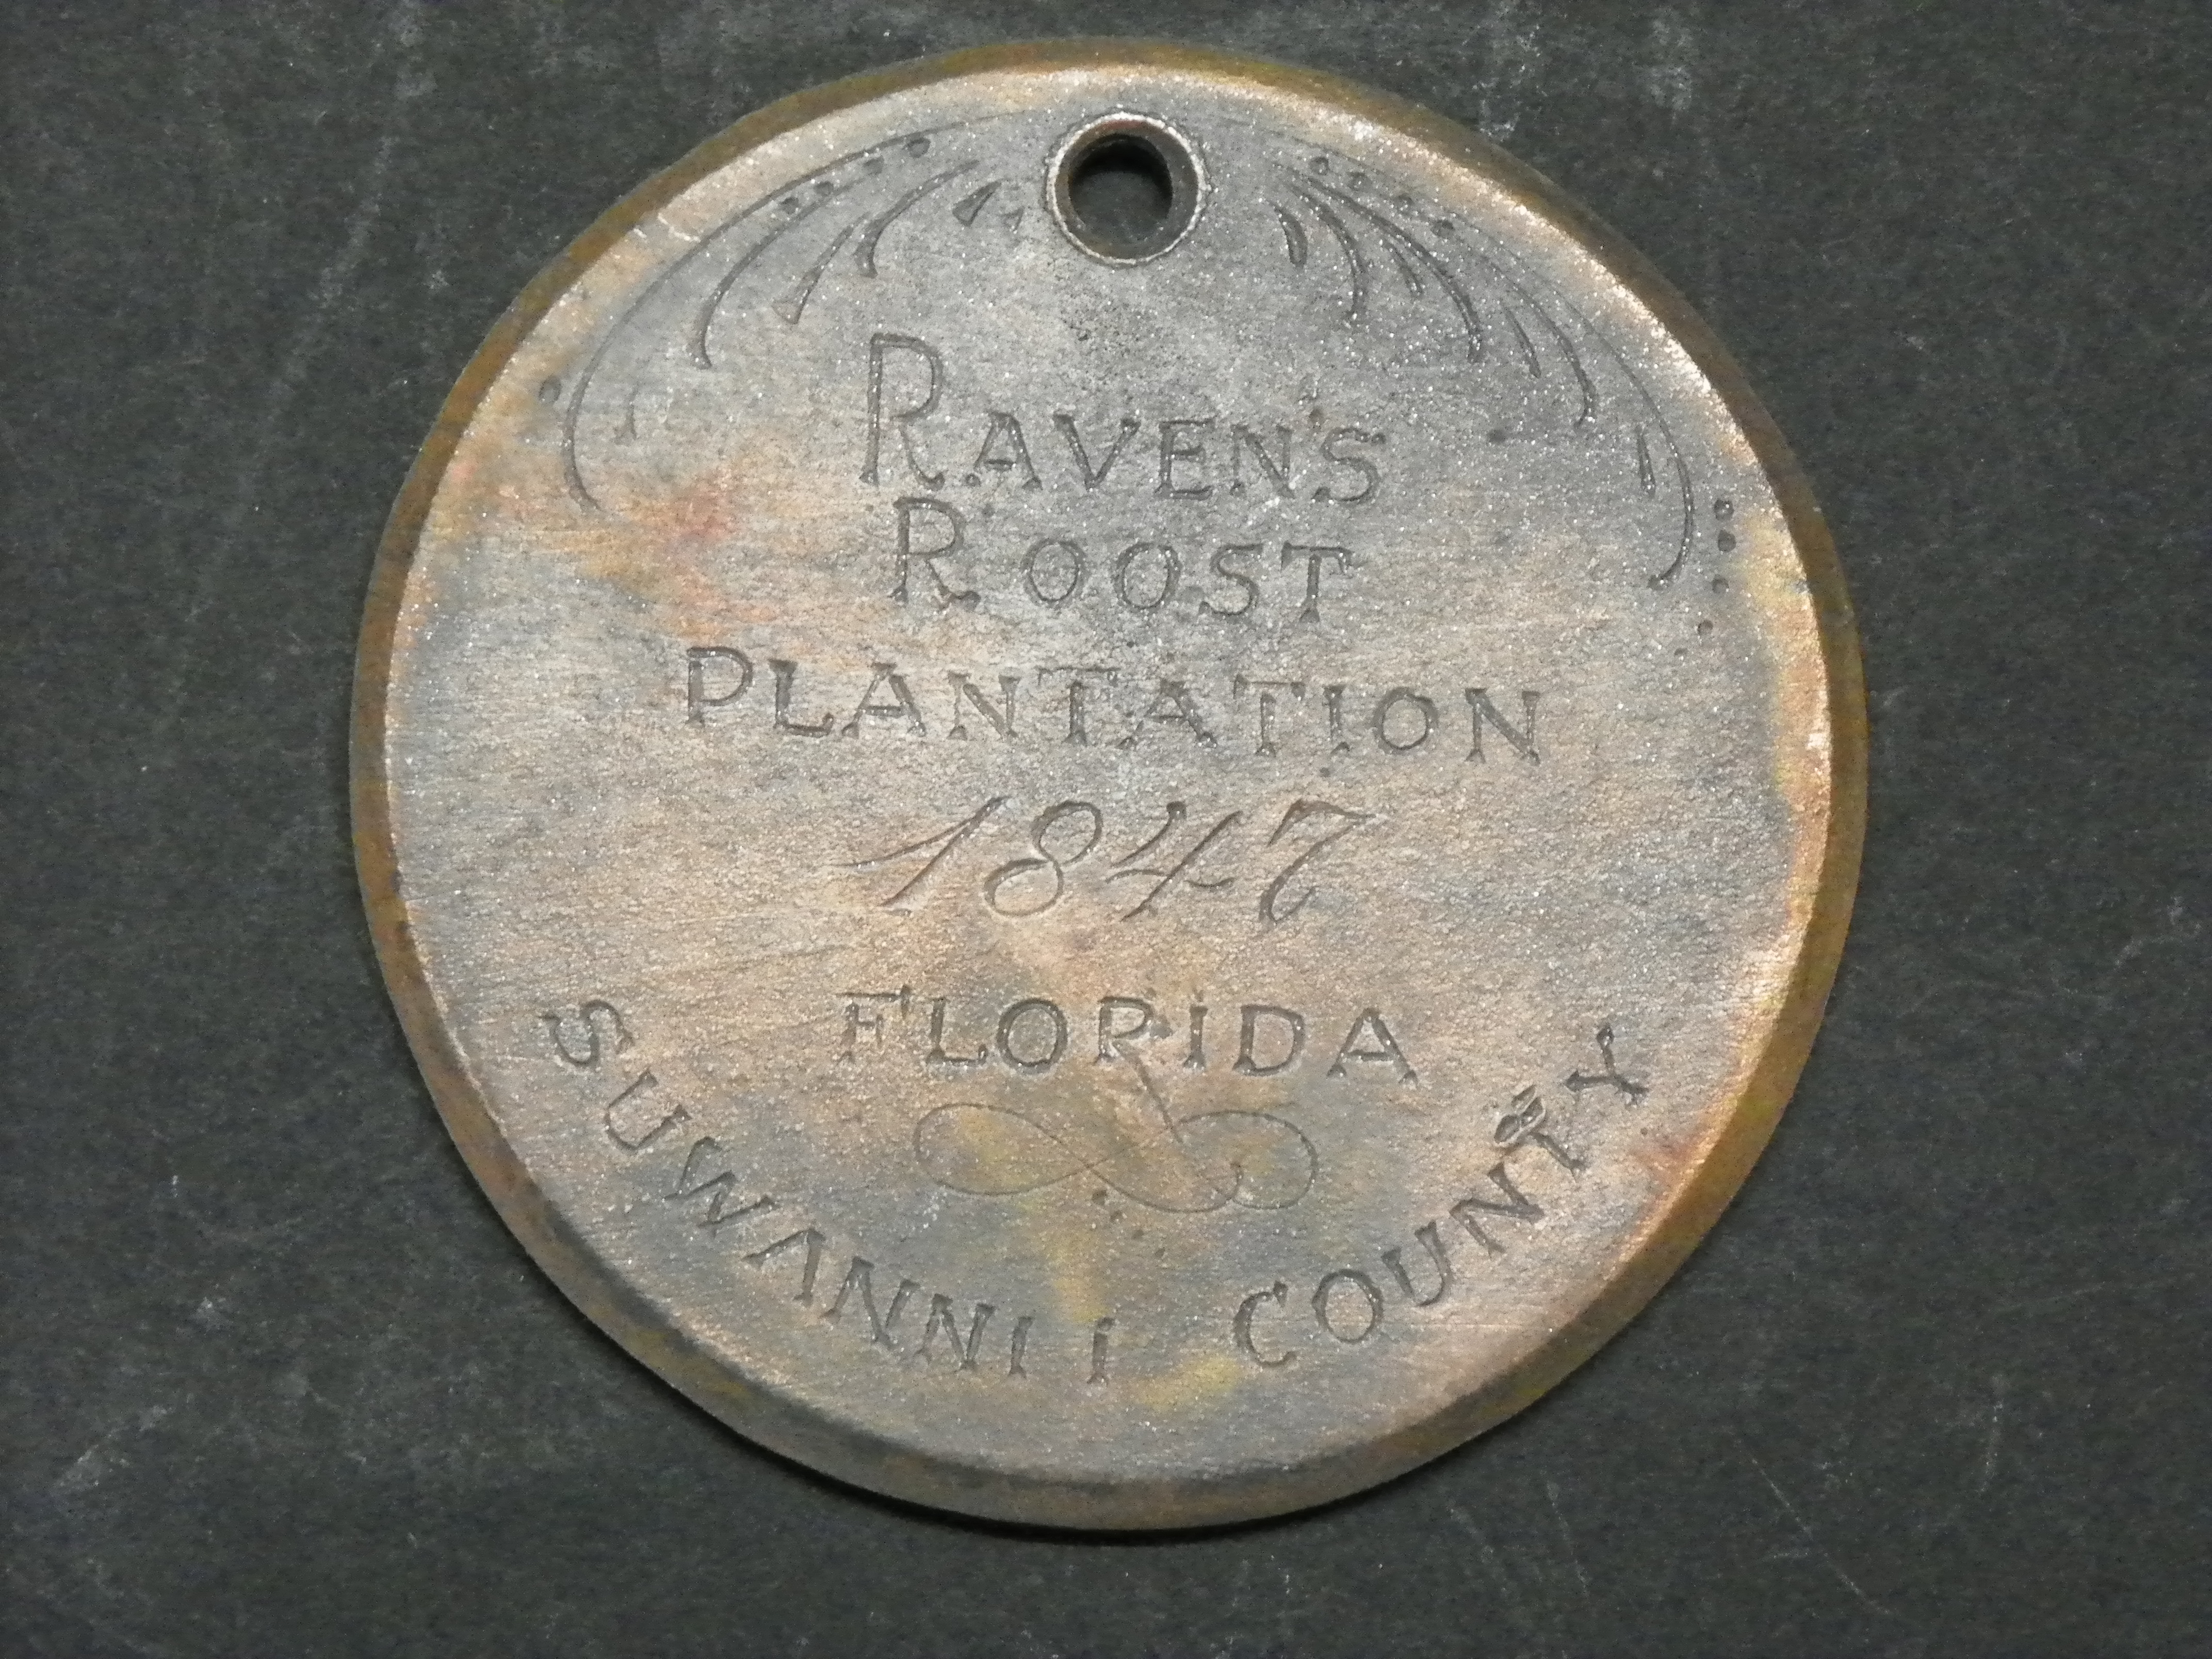  Raven Roost Plantation